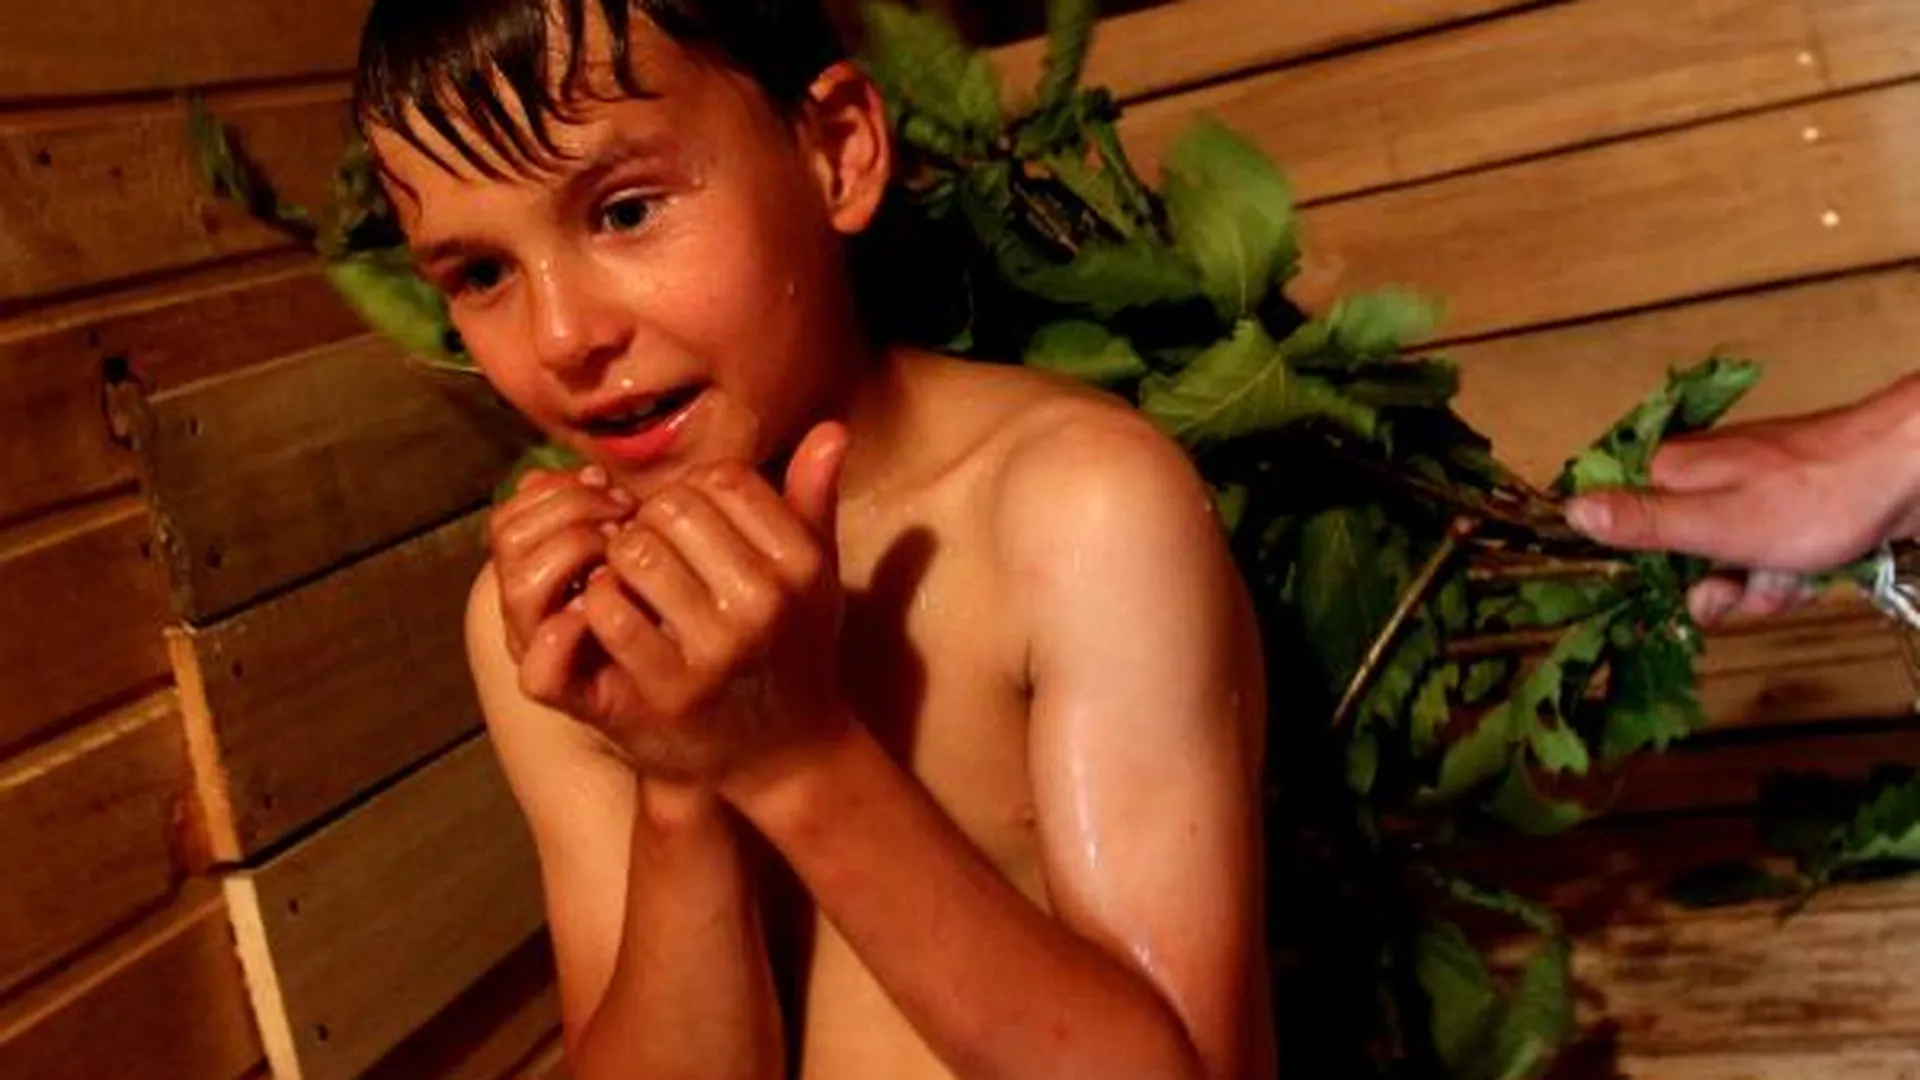 Бесплатно мыться в бане предложили жителям Куровского, у которых отключили воду 